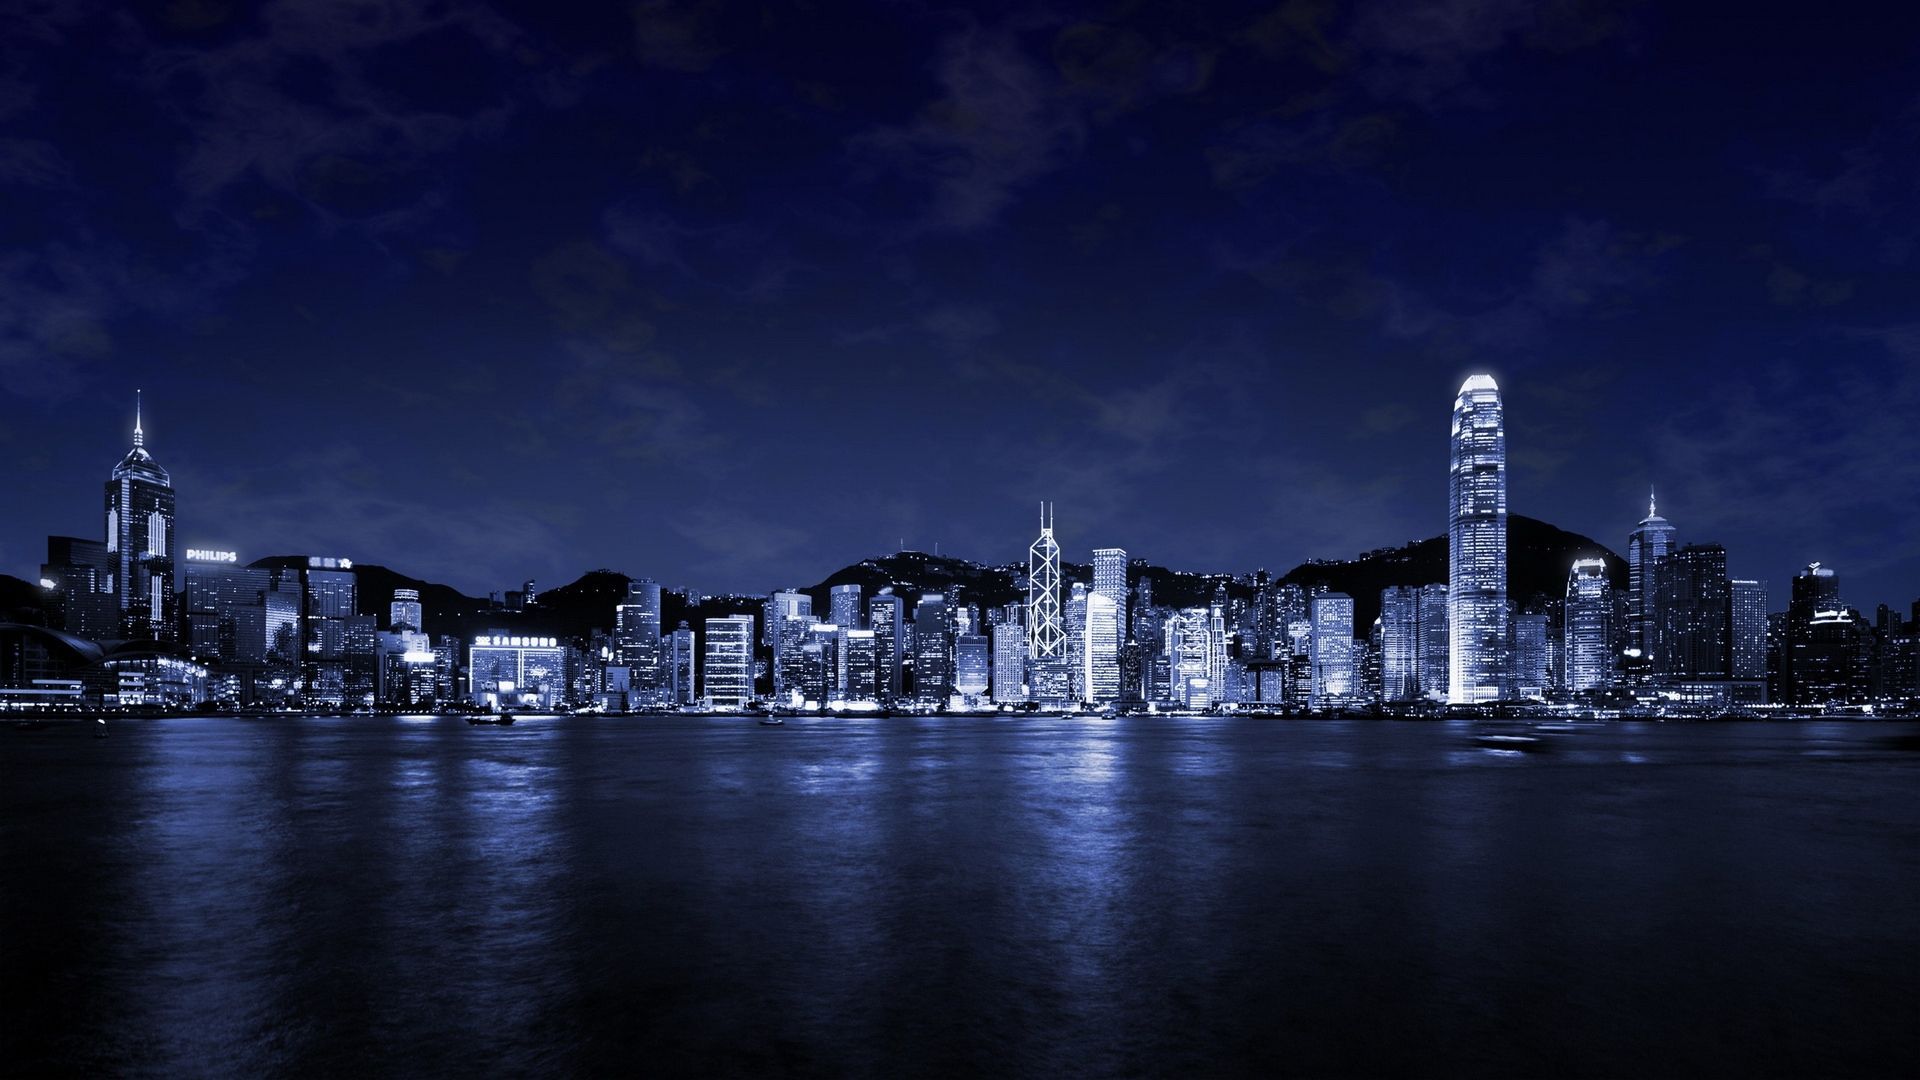 Nếu bạn muốn tìm một bức ảnh nền đẹp lung linh về đêm thành phố xanh, đây là lựa chọn tuyệt vời nhất. Với độ phân giải cao [1920x1080], bức ảnh này sẽ khiến cho màn hình máy tính của bạn trở nên sống động và thú vị hơn bao giờ hết. Hãy tải ngay và trải nghiệm điều kỳ diệu mà bức ảnh này mang lại!